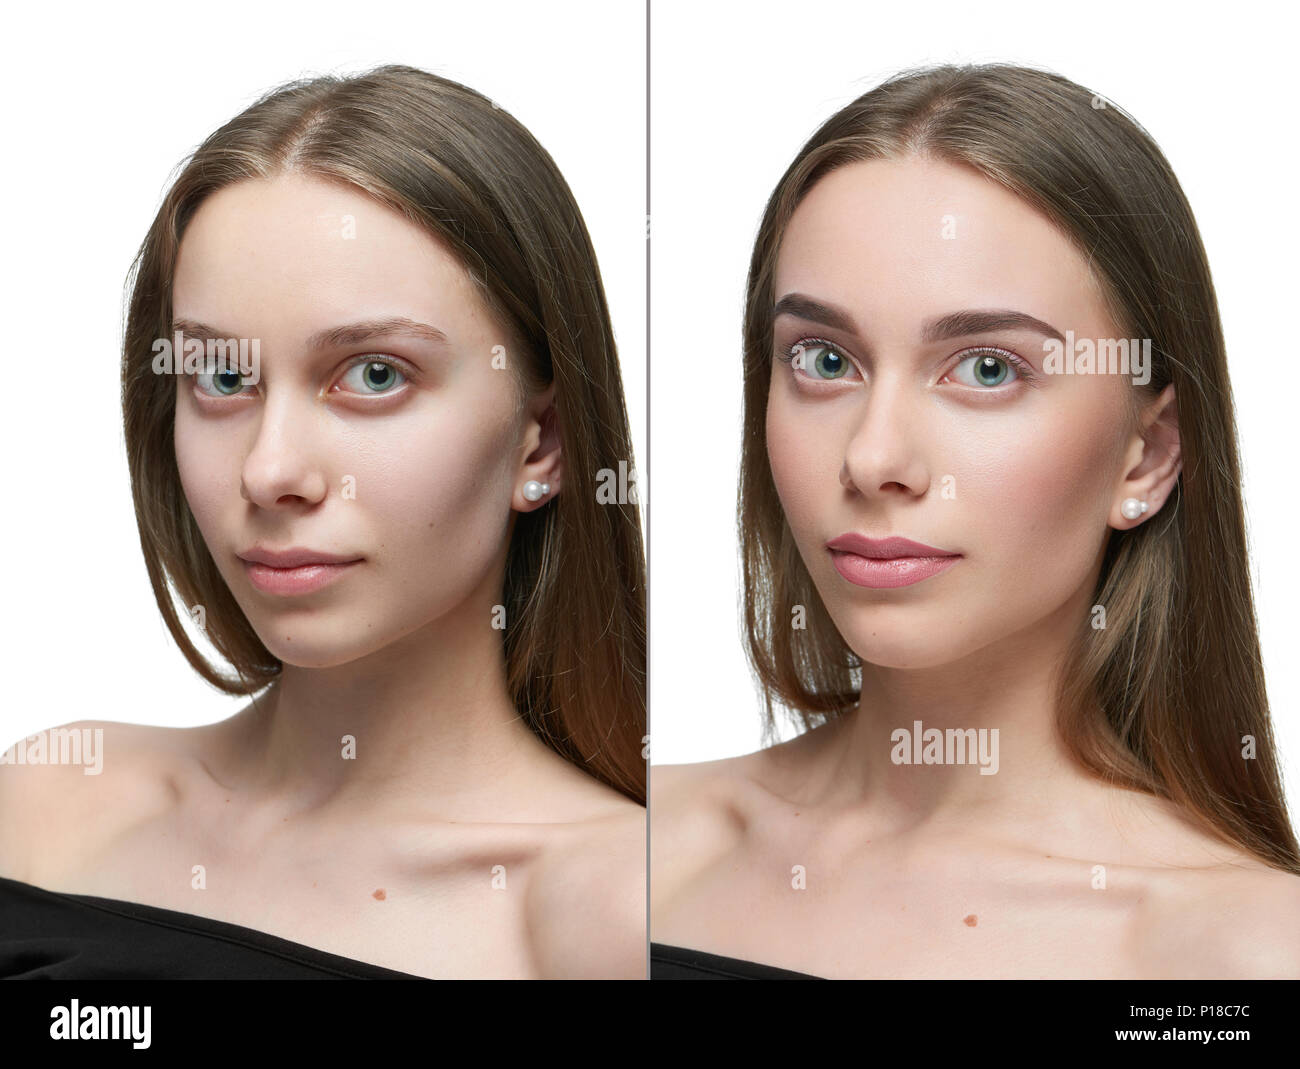 Frontview confronto di una ragazza prima e dopo il make up. sinistra pert -  guardare la ragazza della fotocamera senza make up, parte destra - stessa  ragazza in posa dopo make up.